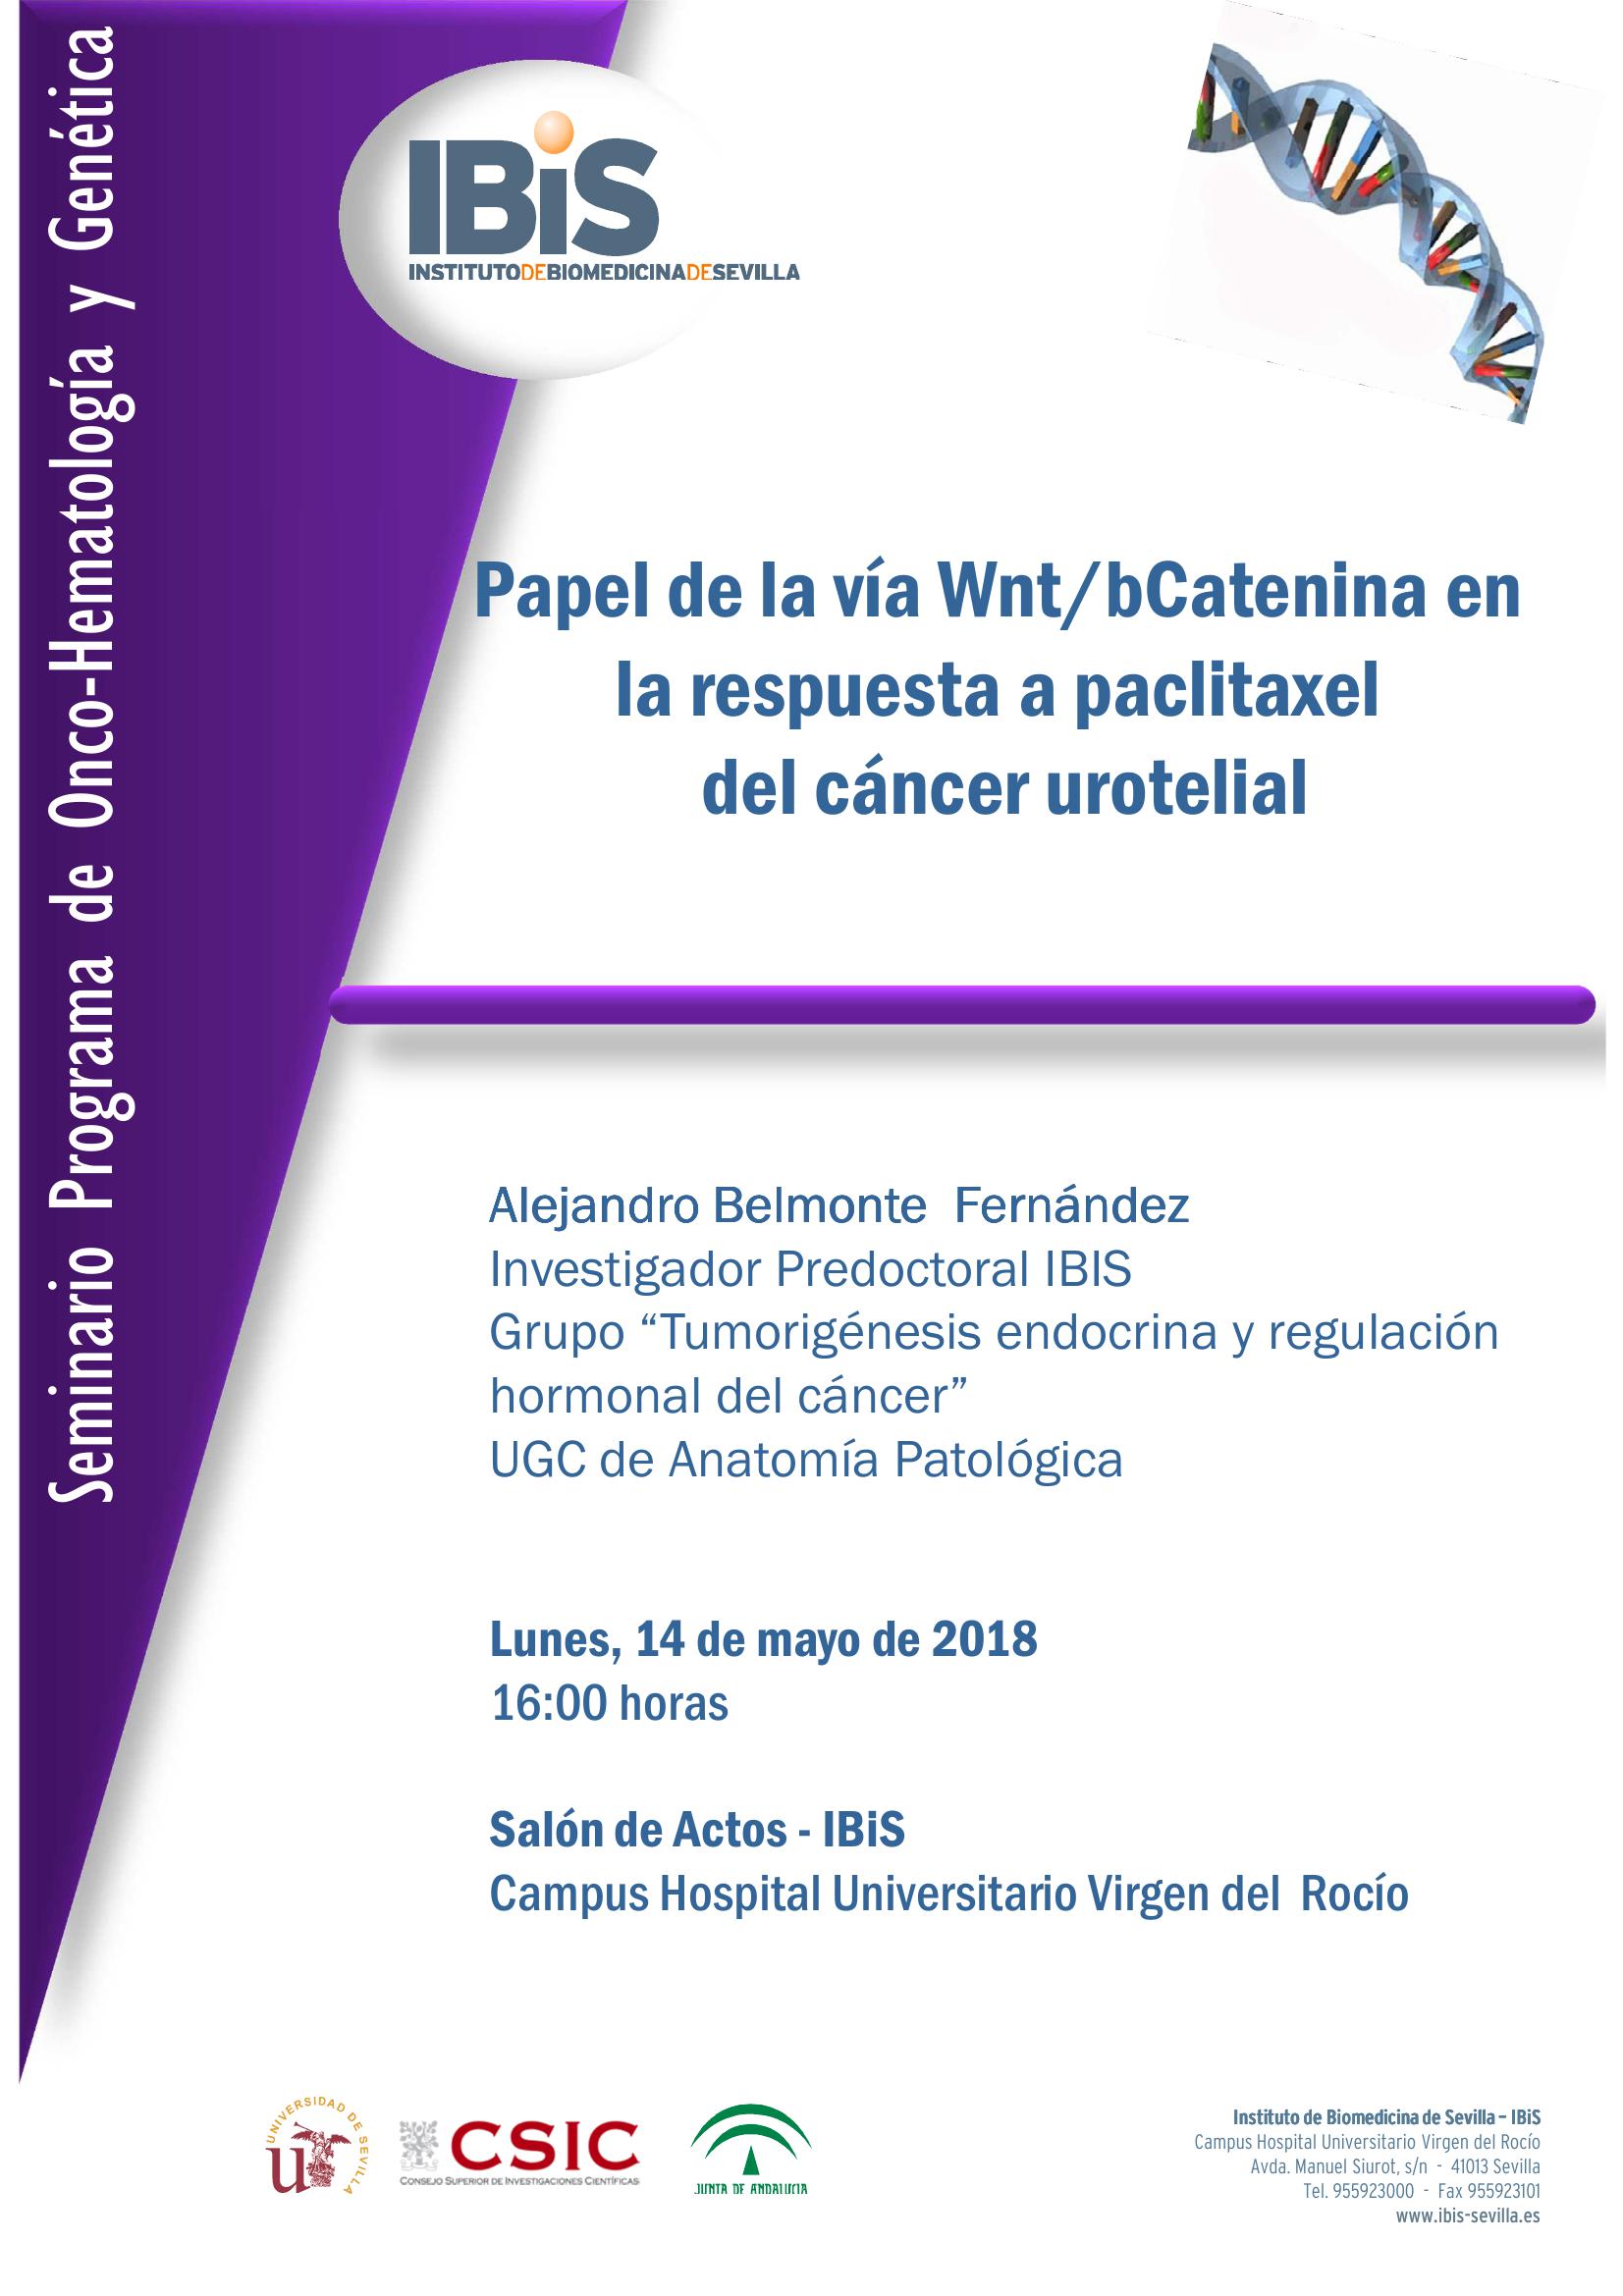 Poster: Papel de la vía Wnt/bCatenina en la respuesta a paclitaxel  del cáncer urotelial